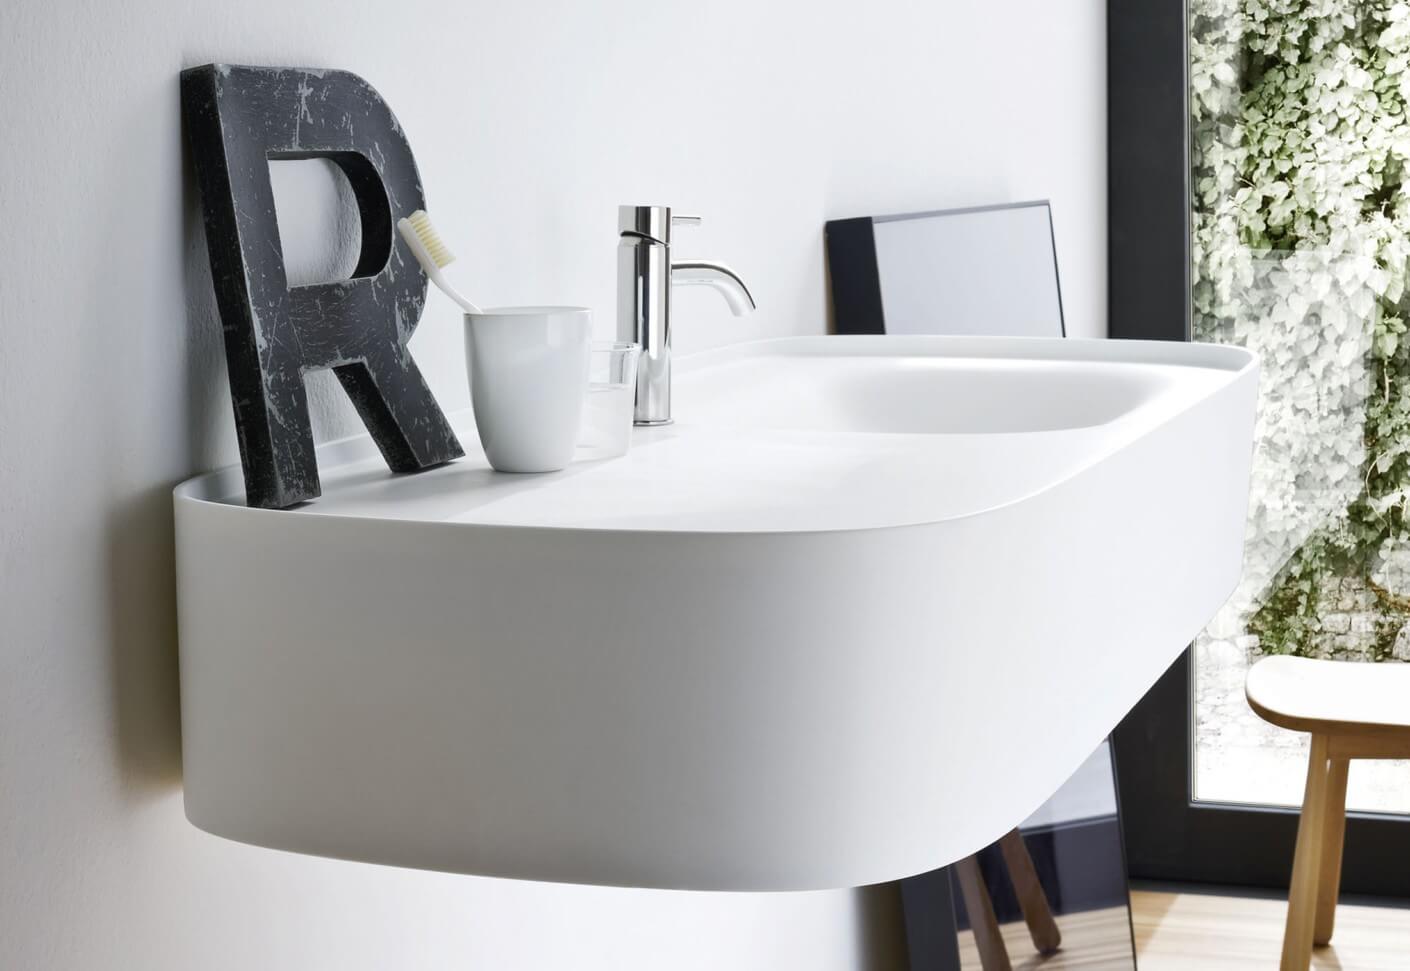 Gäste WC Design am wandmontiertem Waschbecken mit Zahnputzbecker und Buchstabe R als Dekorationsobjekt